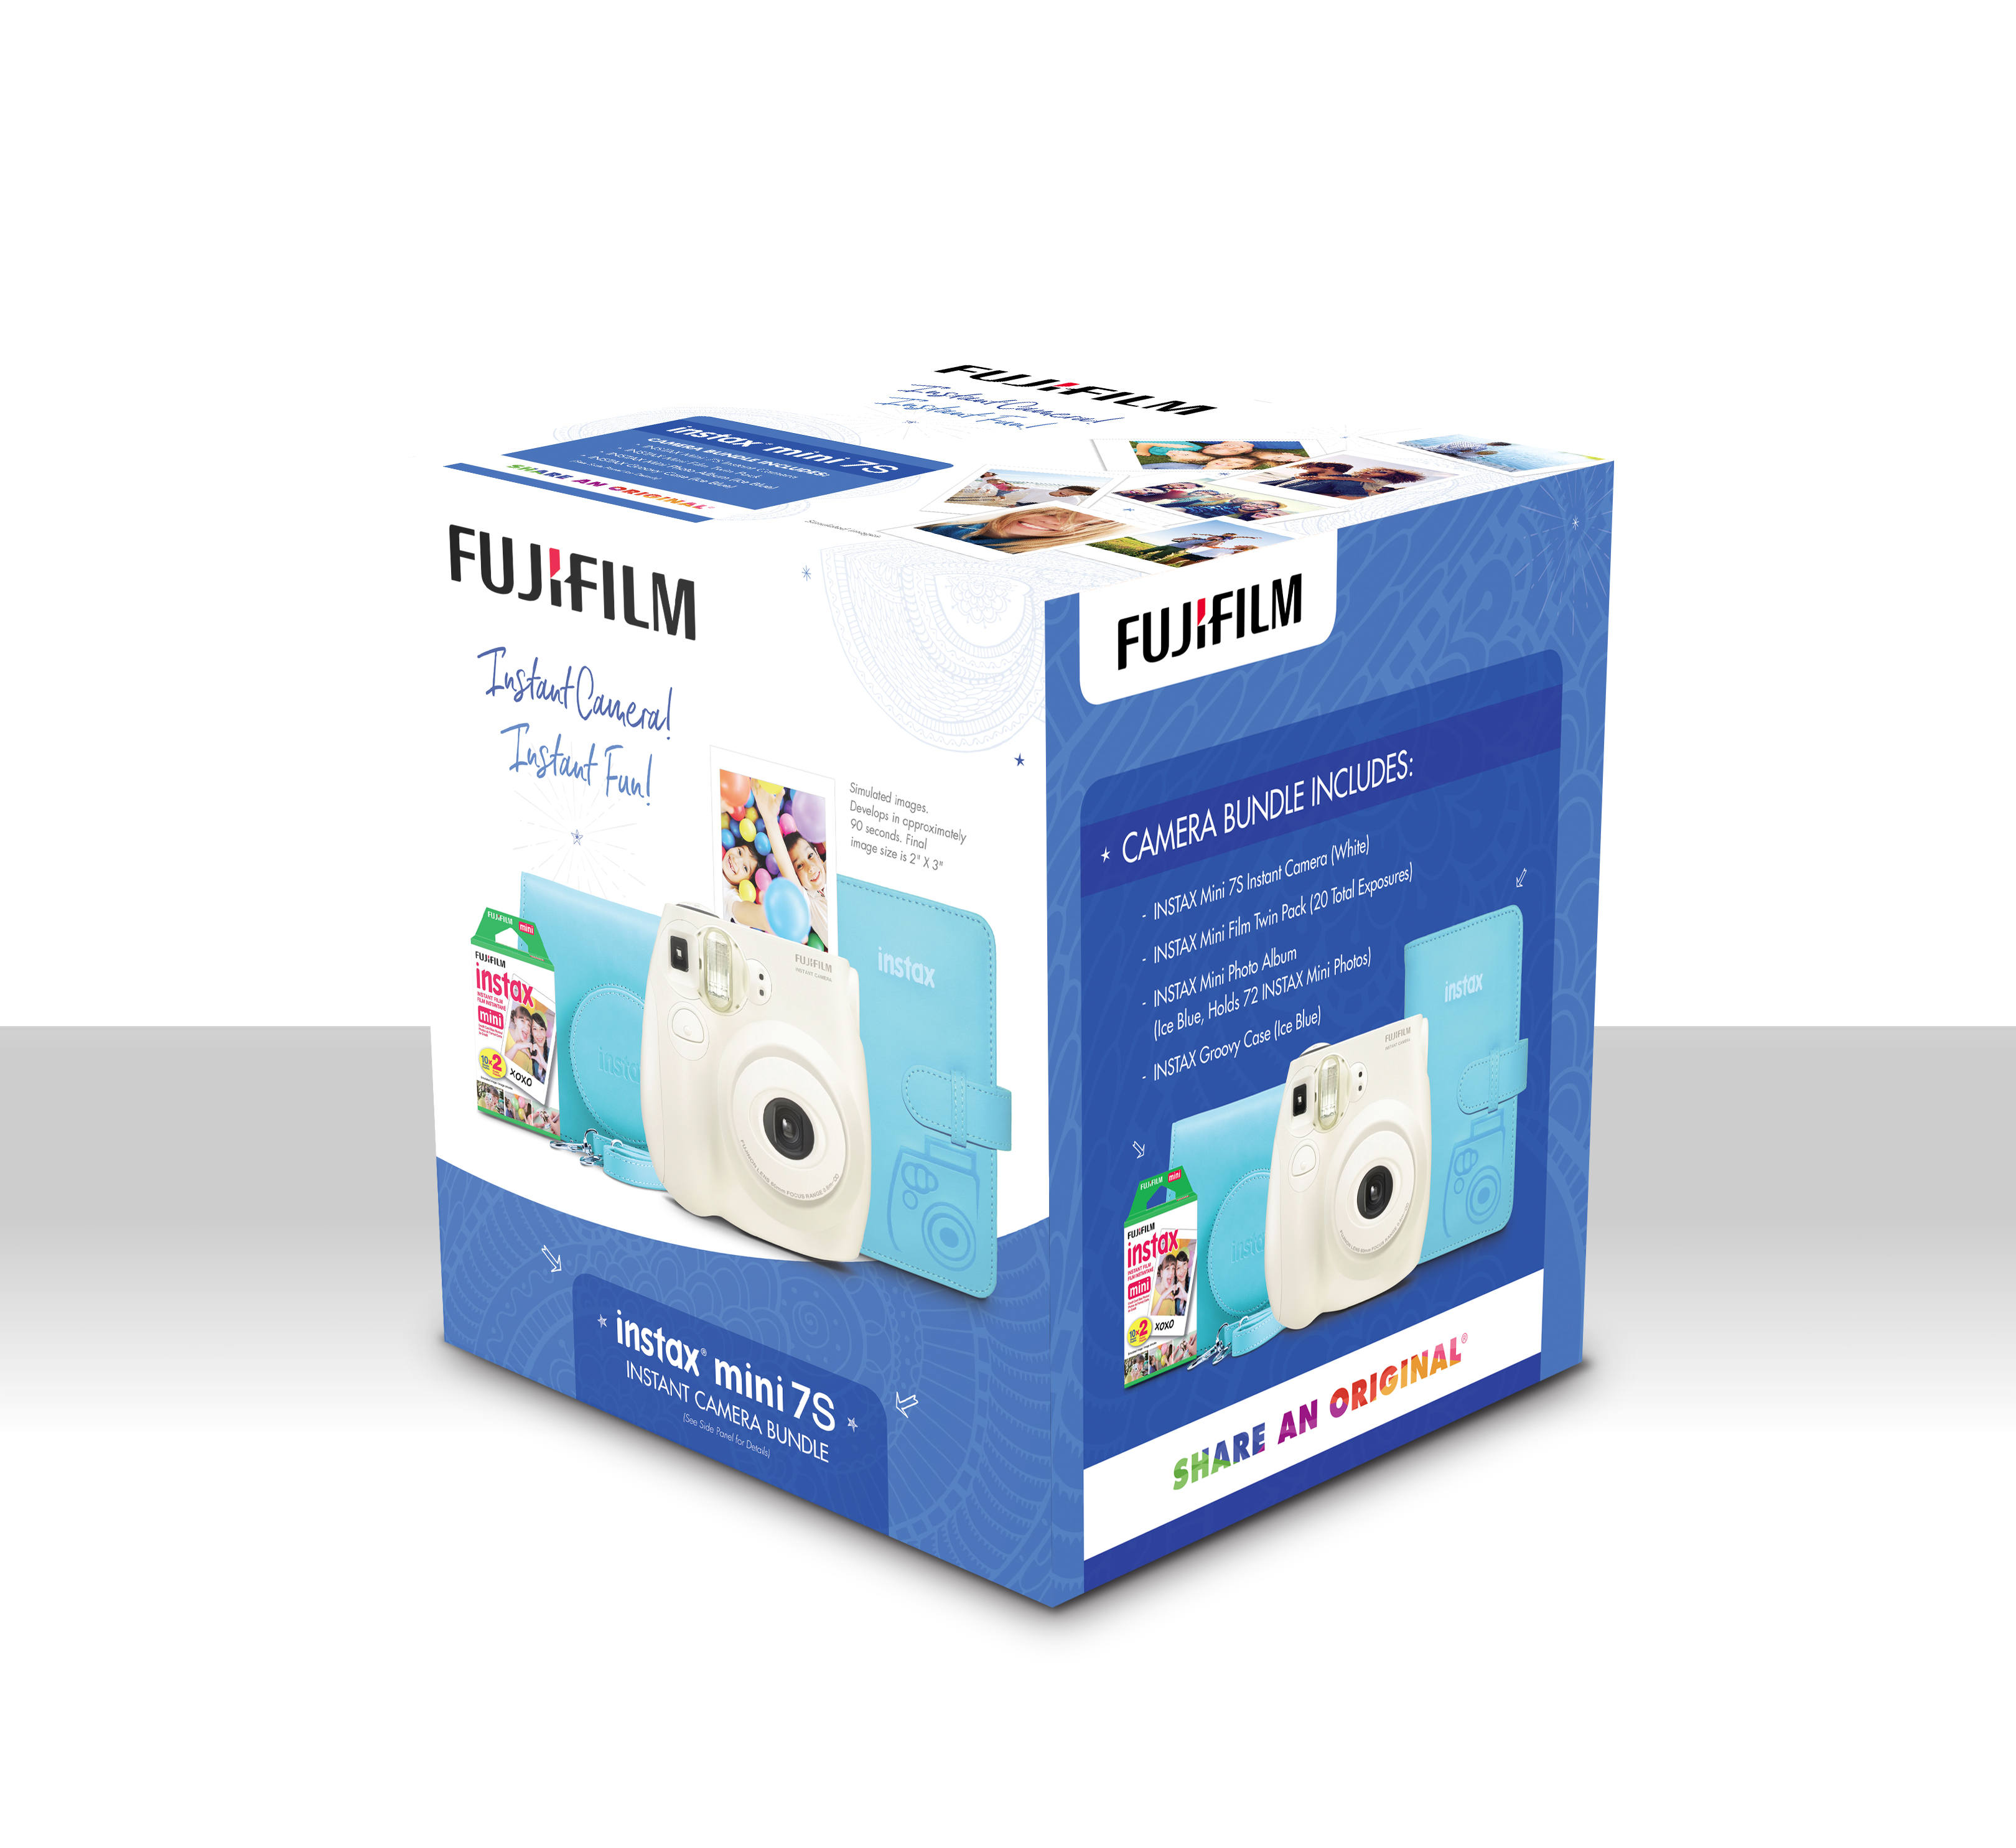 FujiFilm 600018767 Instax Mini 7S Instant Camera Bundle W/ Film Photo Album & Case - image 4 of 4